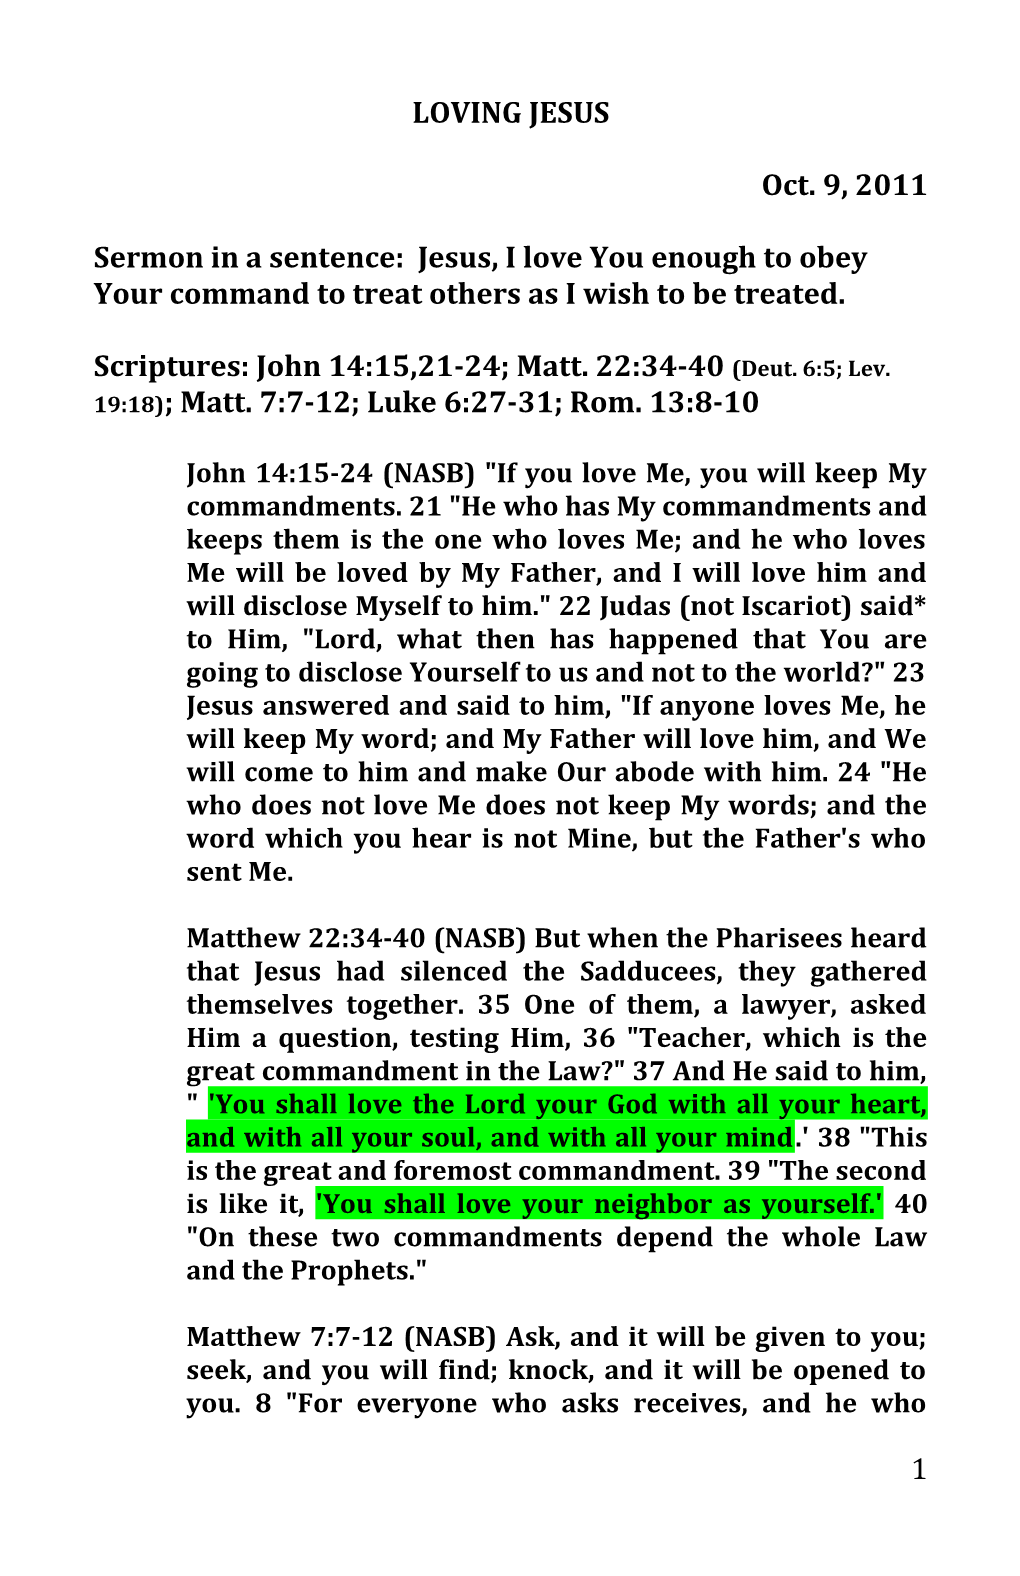 Scriptures: John 14:15,21-24; Matt. 22:34-40 (Deut. 6:5; Lev. 19:18); Matt. 7:7-12; Luke